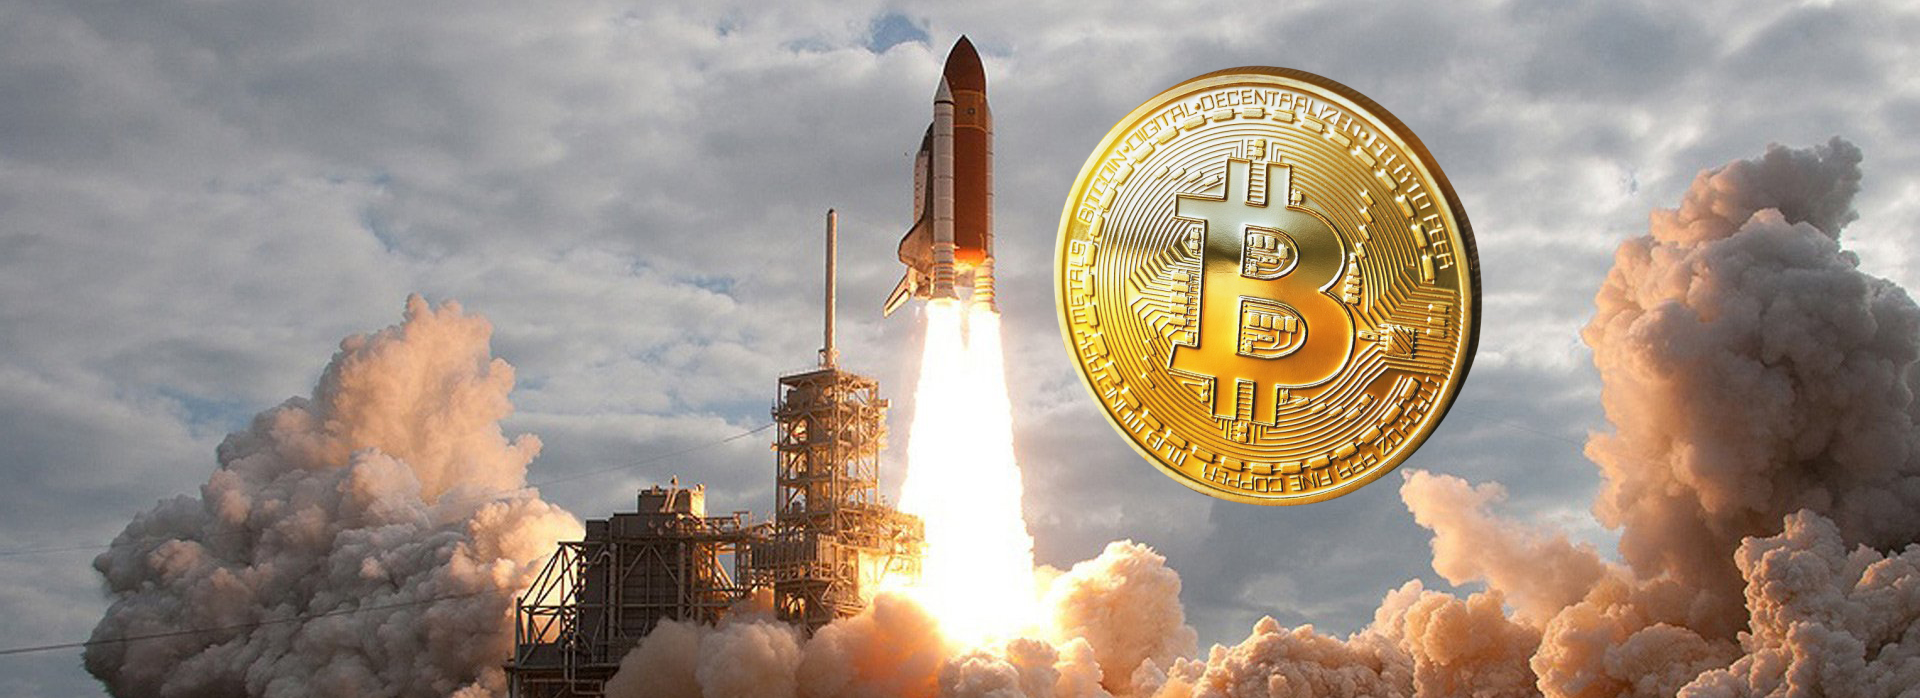 Огляд ринку криптовалют - Біткоїн може "злетіти на Місяць"